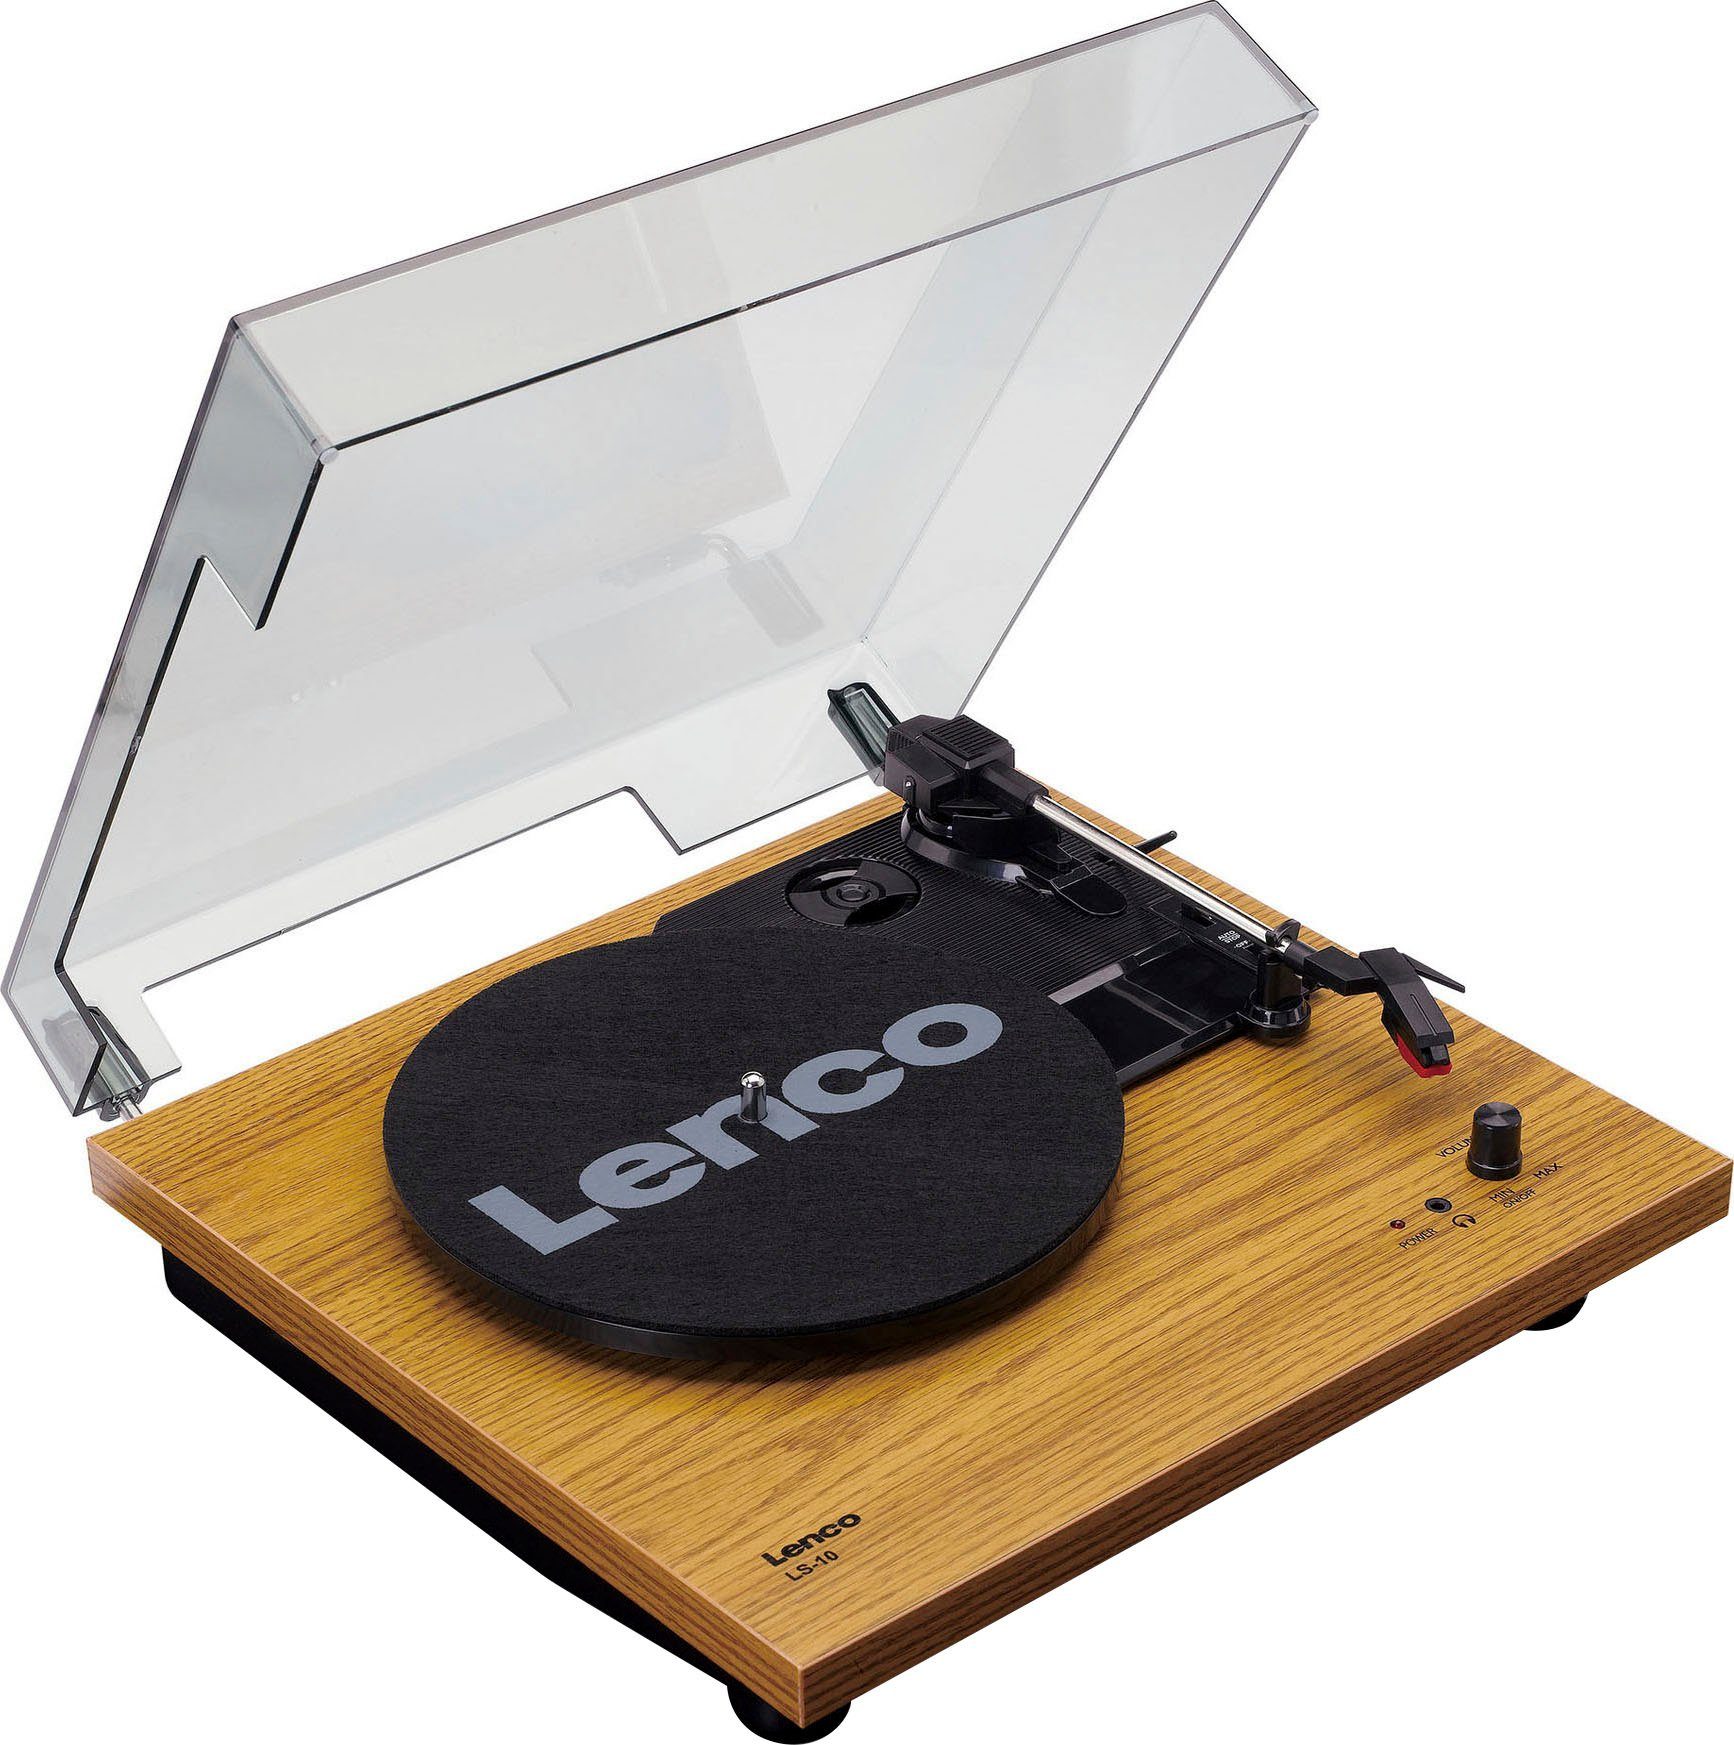 Jetzt günstiger Versandhandel möglich! Lenco LS-10WD Plattenspieler mit Plattenspieler (Riemenantrieb) (Weiß/Holz) Lautsprechern